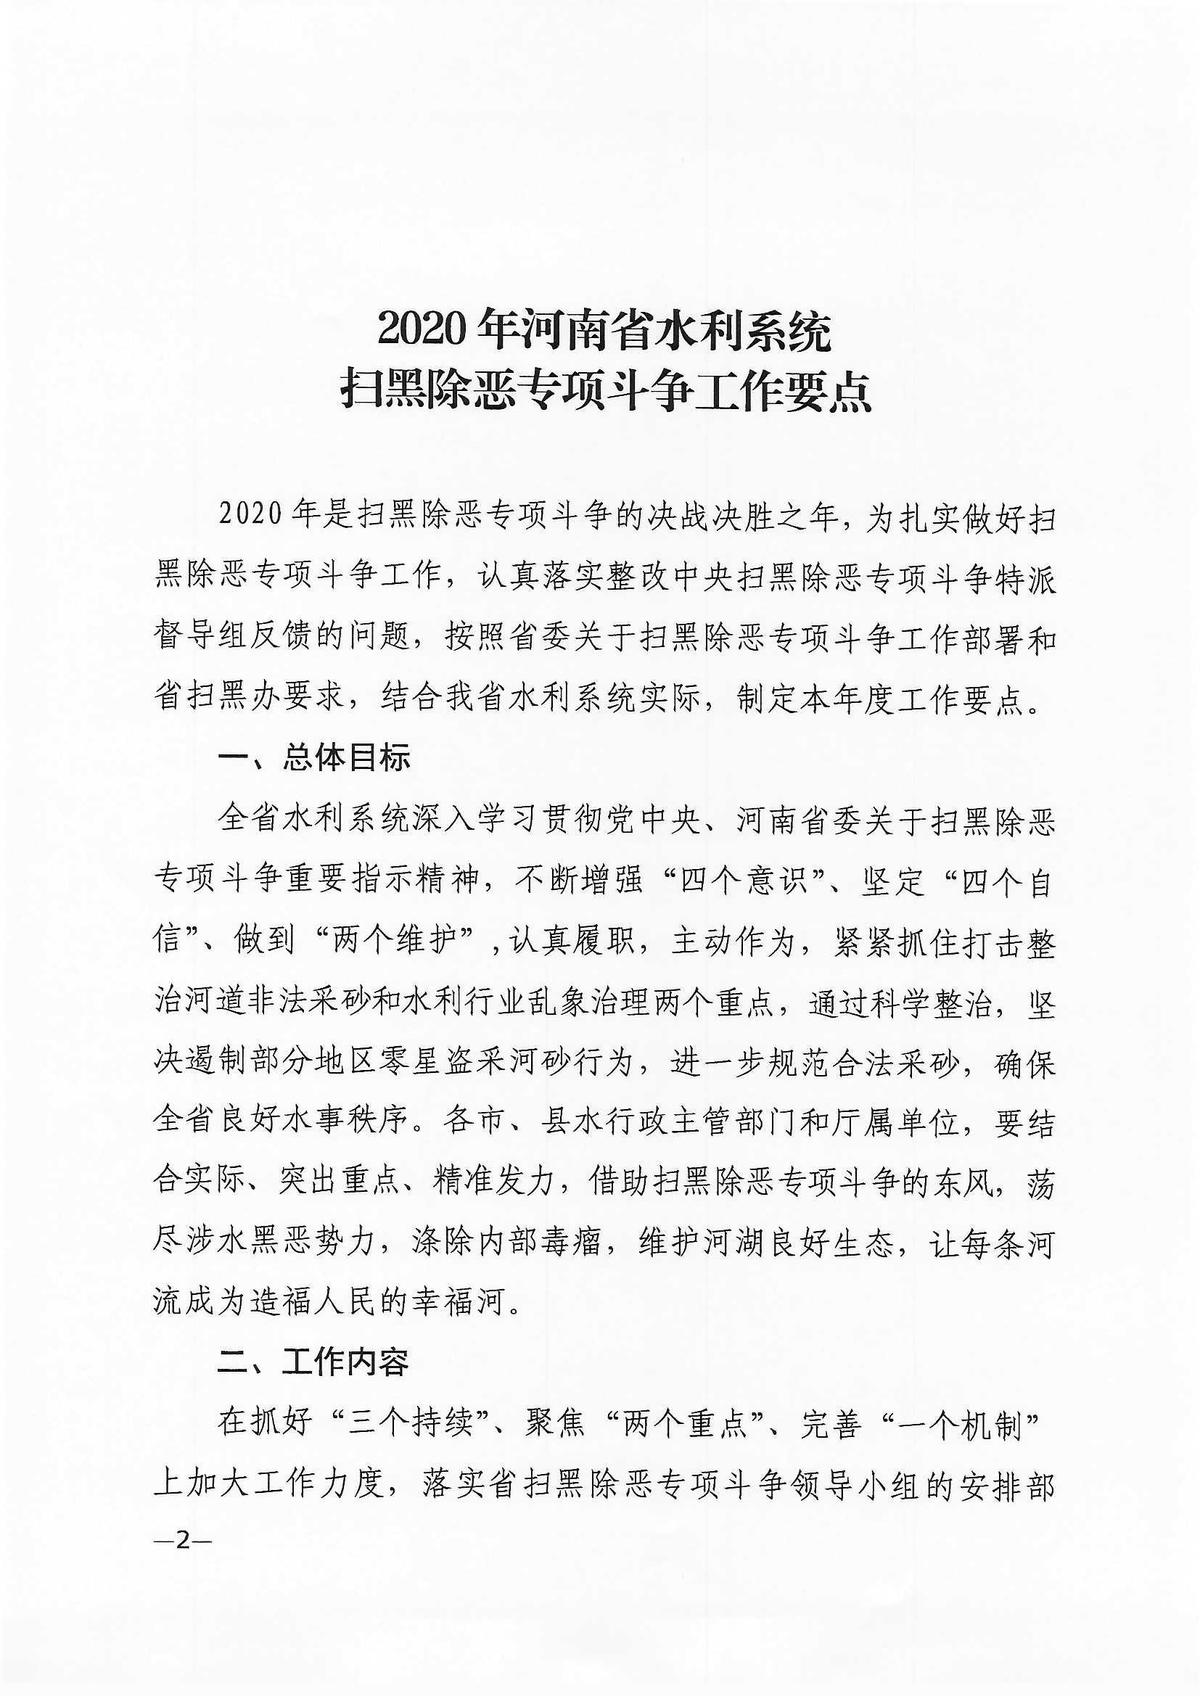 关于印发2020年河南省水利系统扫黑除恶专项斗争工作要点的通知